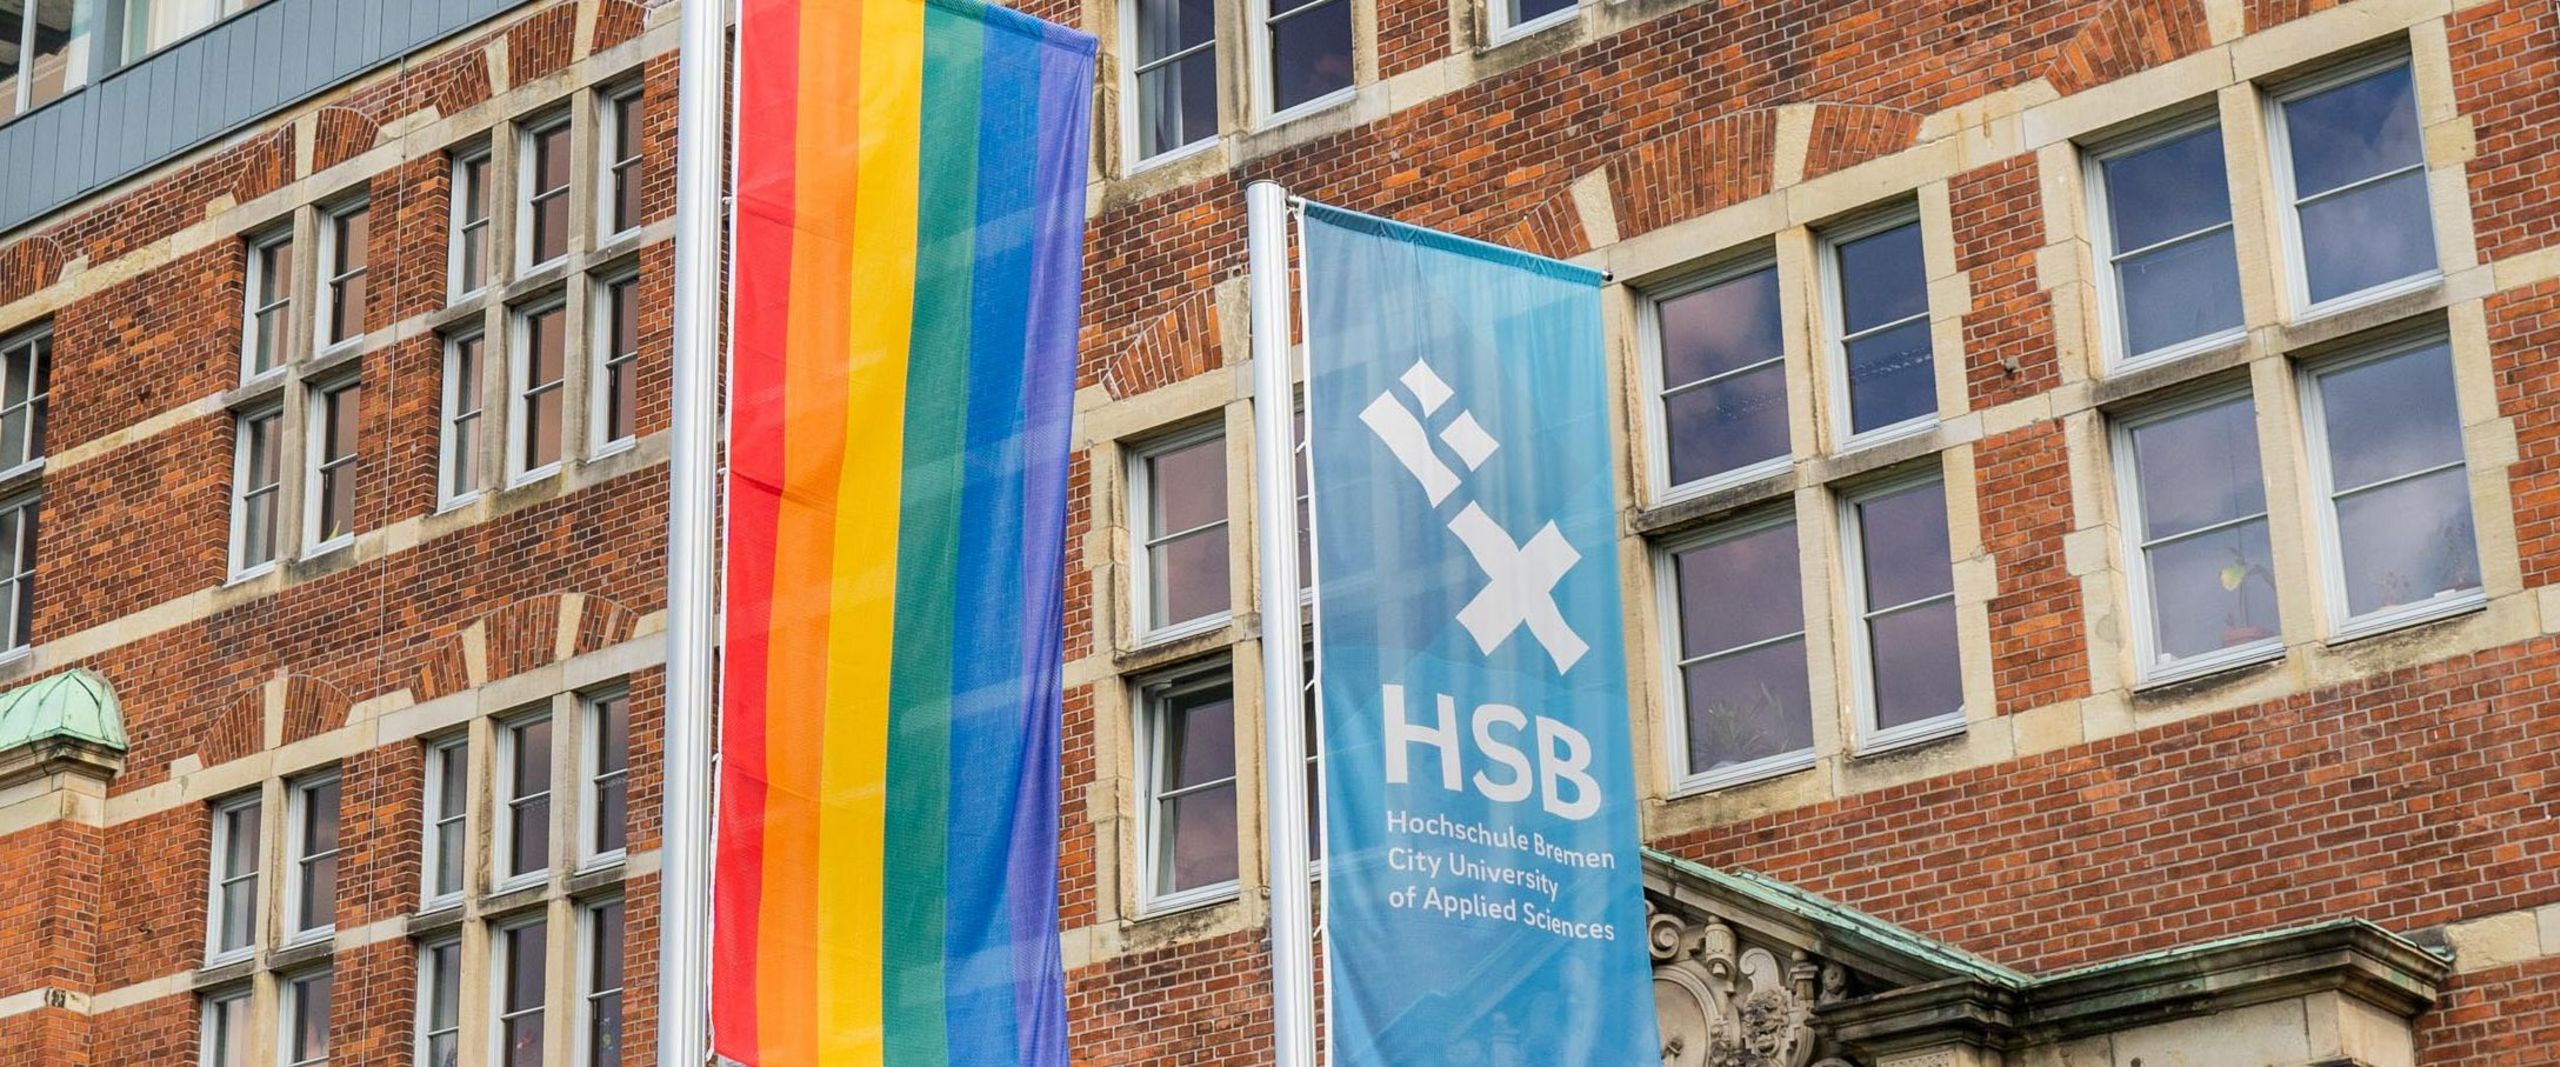 Eine Regenbogenflagge neben der HSB-Flagge.